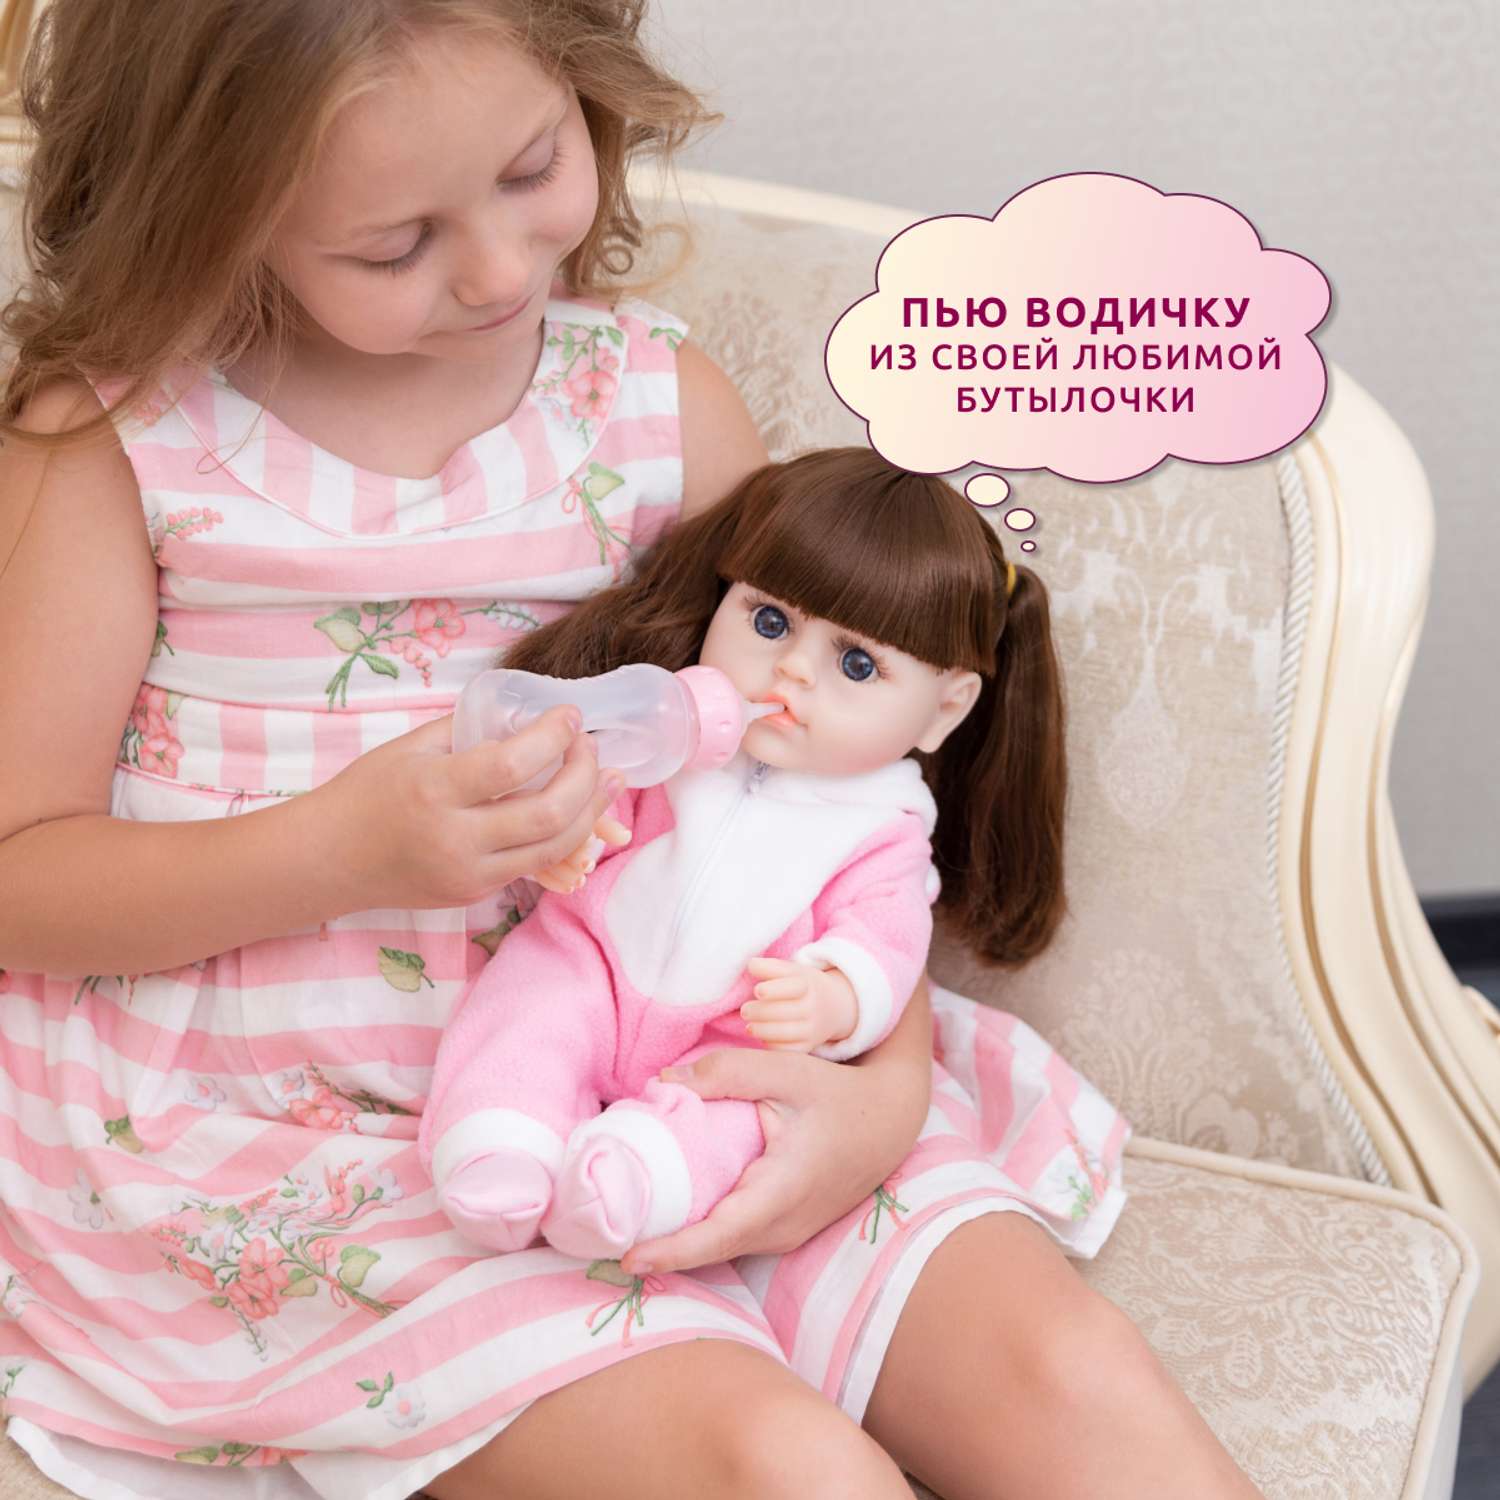 Кукла Реборн QA BABY Яна девочка интерактивная Пупс набор игрушки для ванной для девочки 38 см 3812 - фото 6